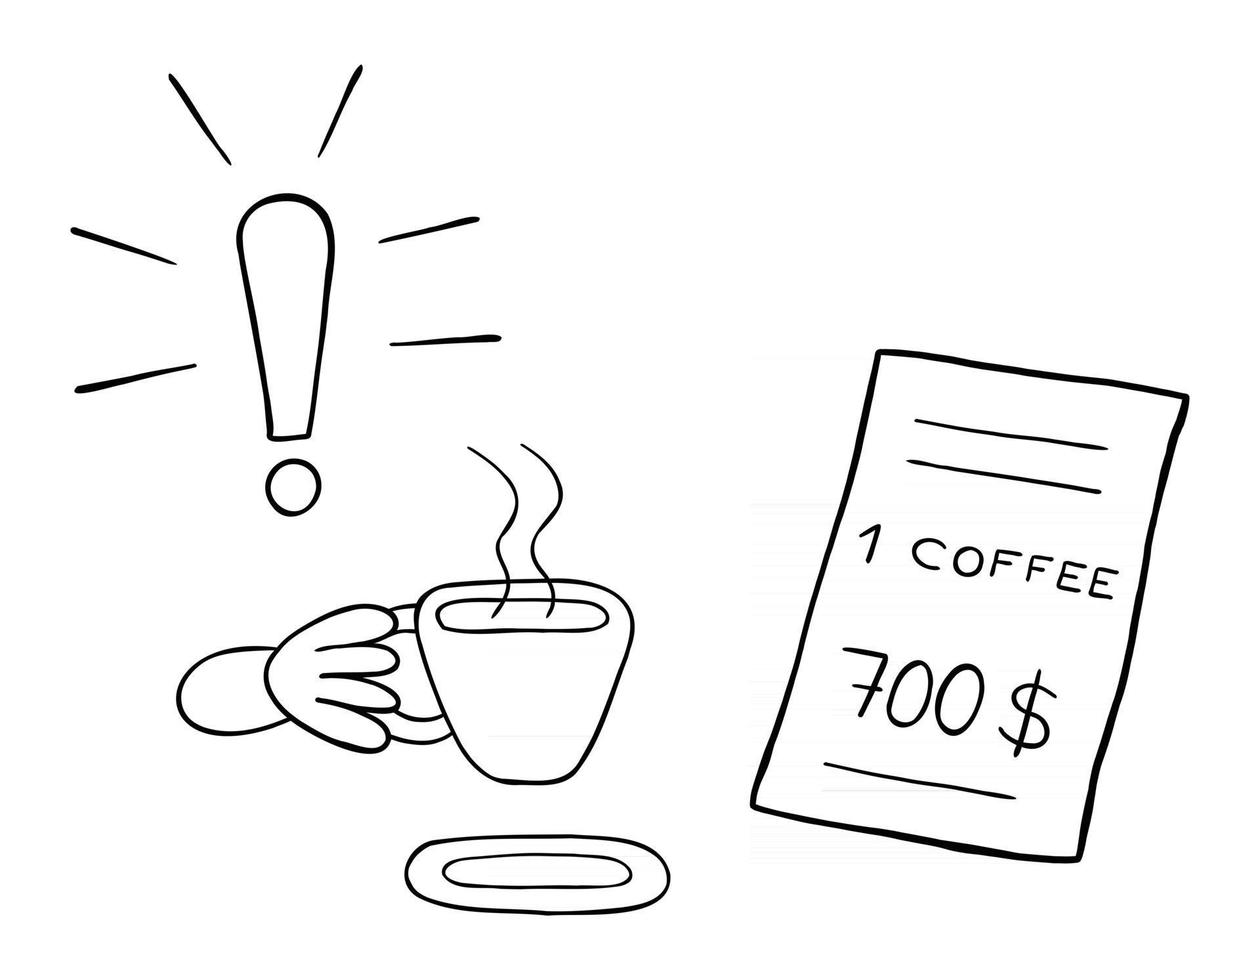 tecknad vektorillustration av en kaffedrycker och en restaurang till ett mycket högt pris vektor